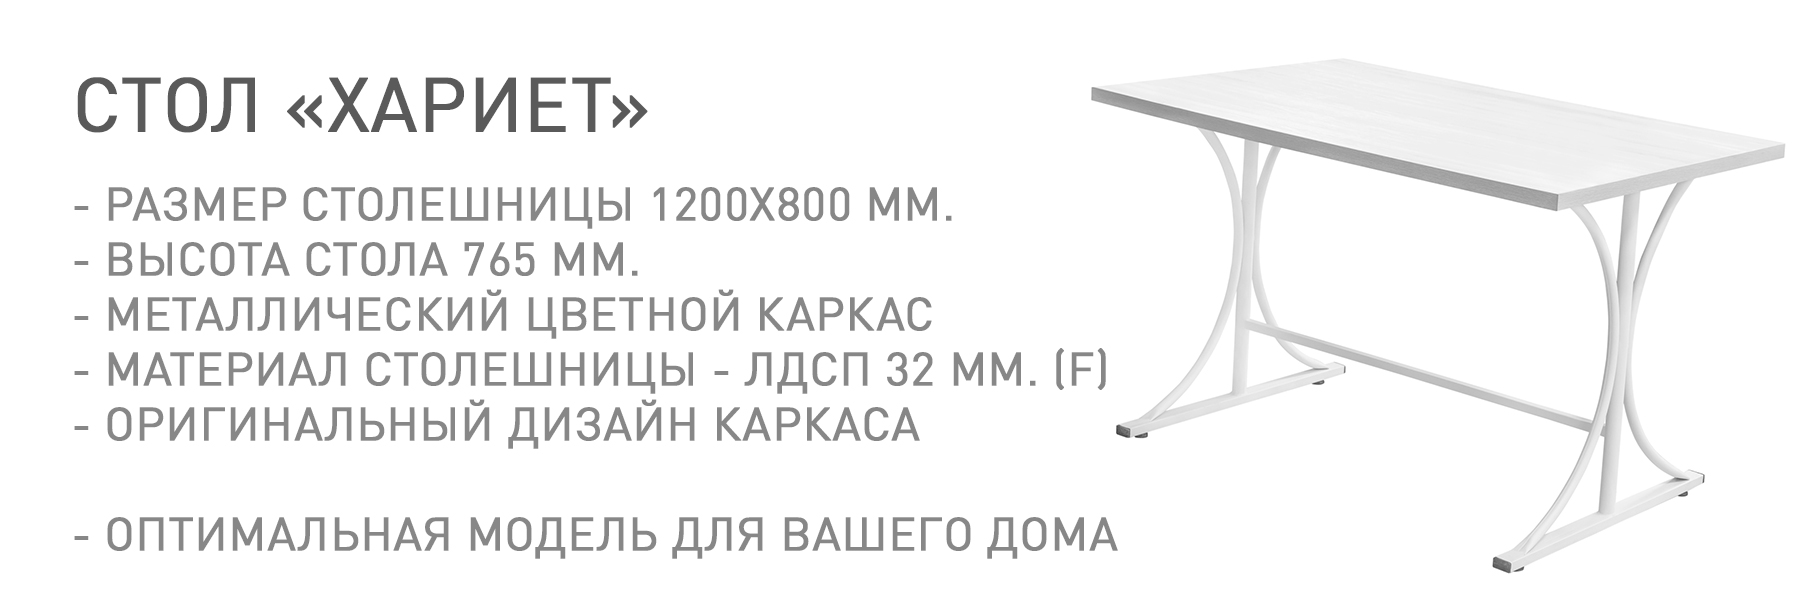 ХАРИЕТ-МП-ТВ-948531.jpg